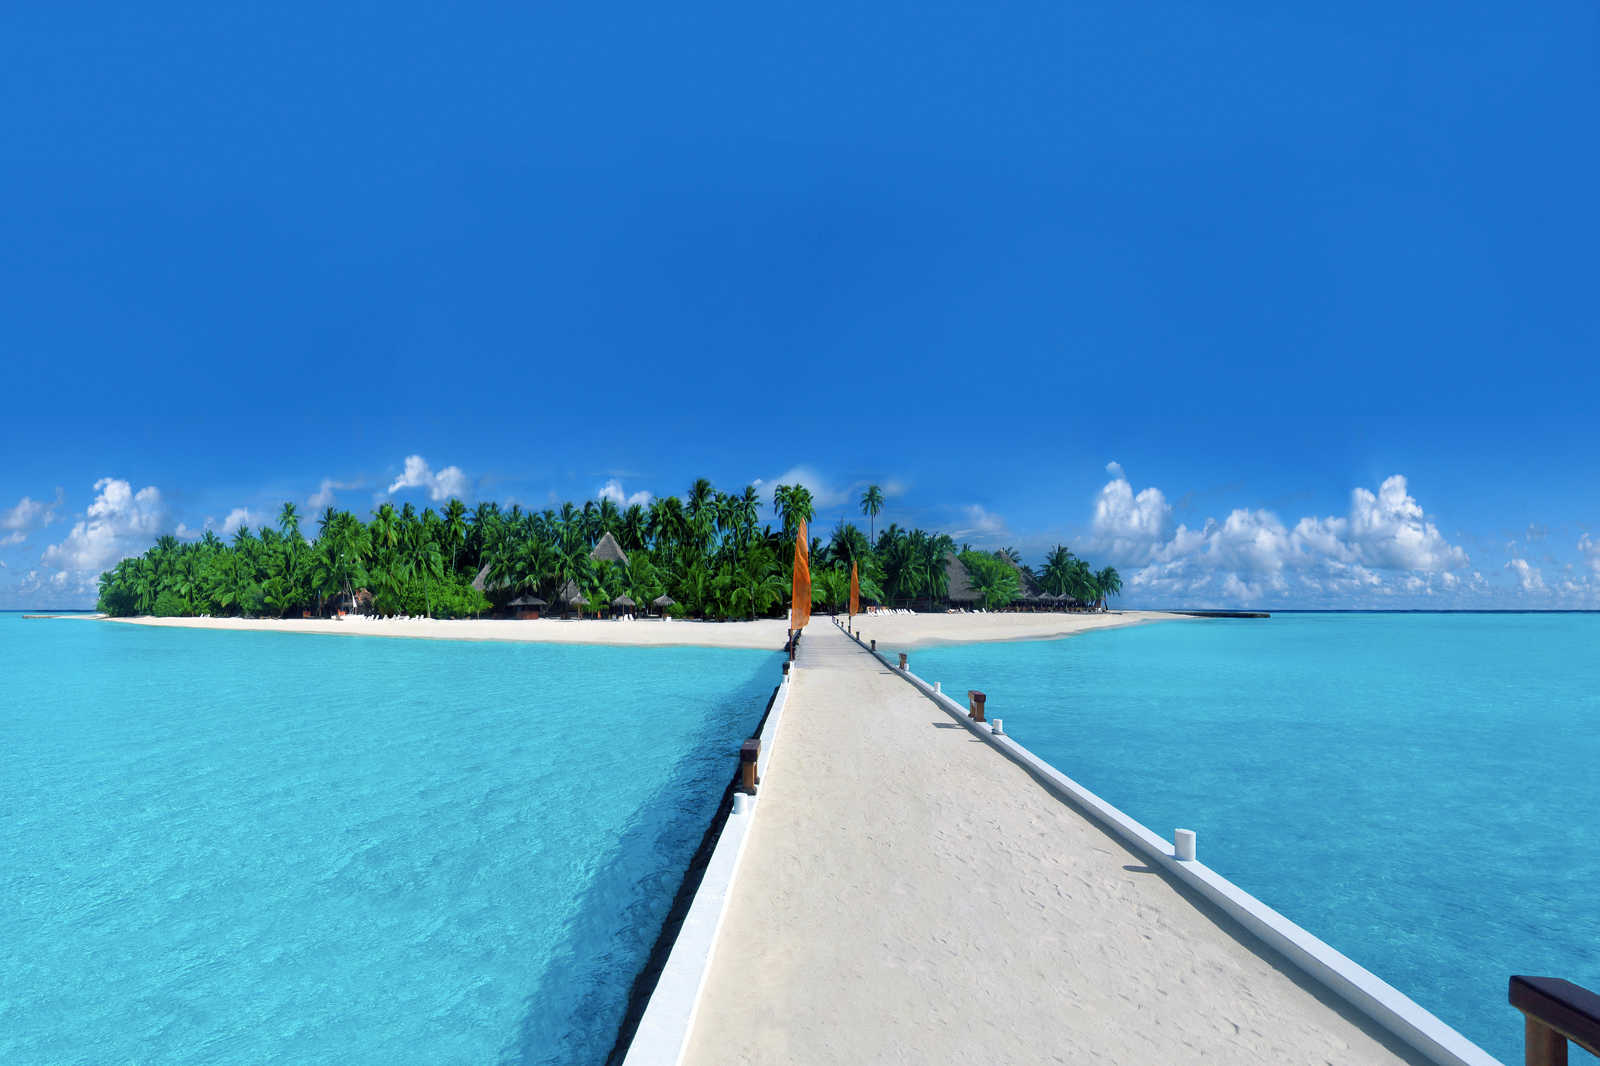             Tableau toile Île avec passerelle vers la plage - 1,20 m x 0,80 m
        